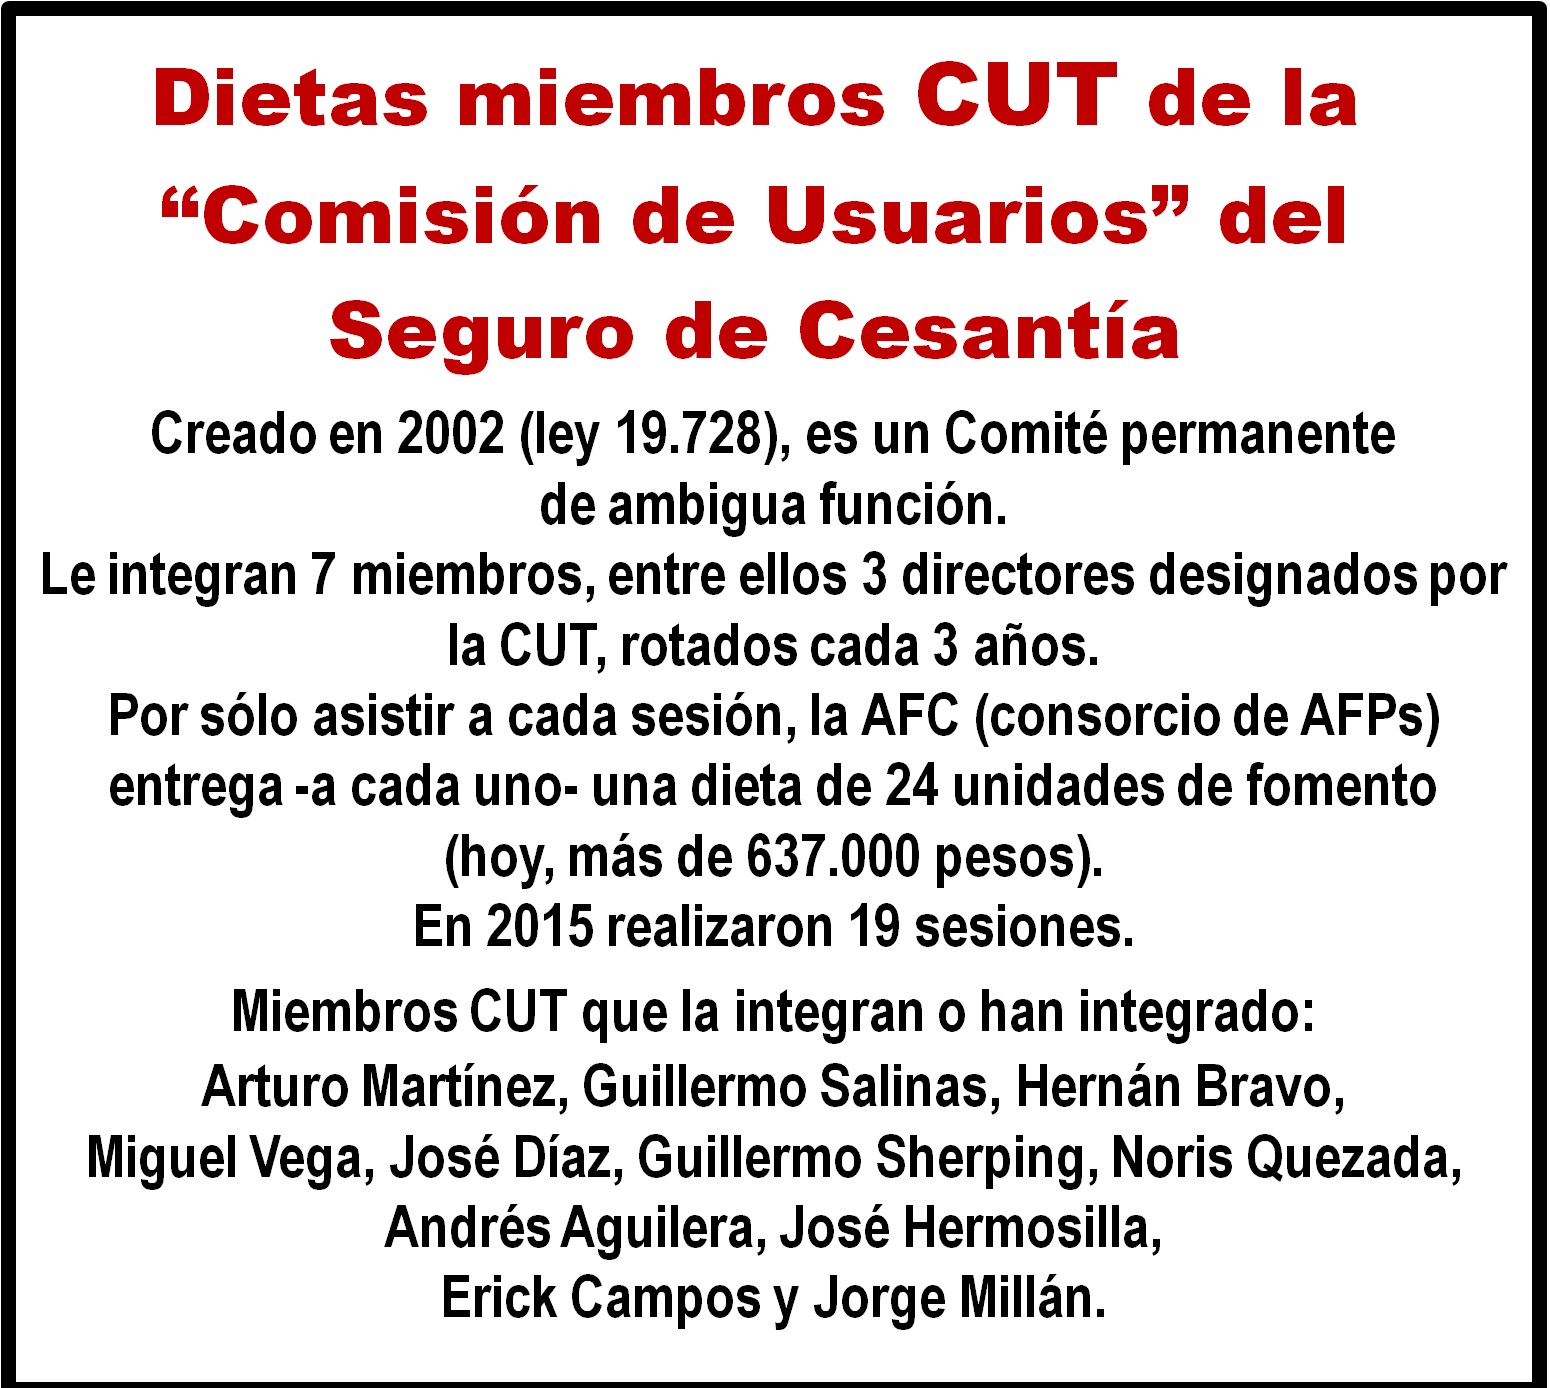 Dietas en dinero para miembros CUT en "Comisión de Usuarios" del Seguro de Cesantía.